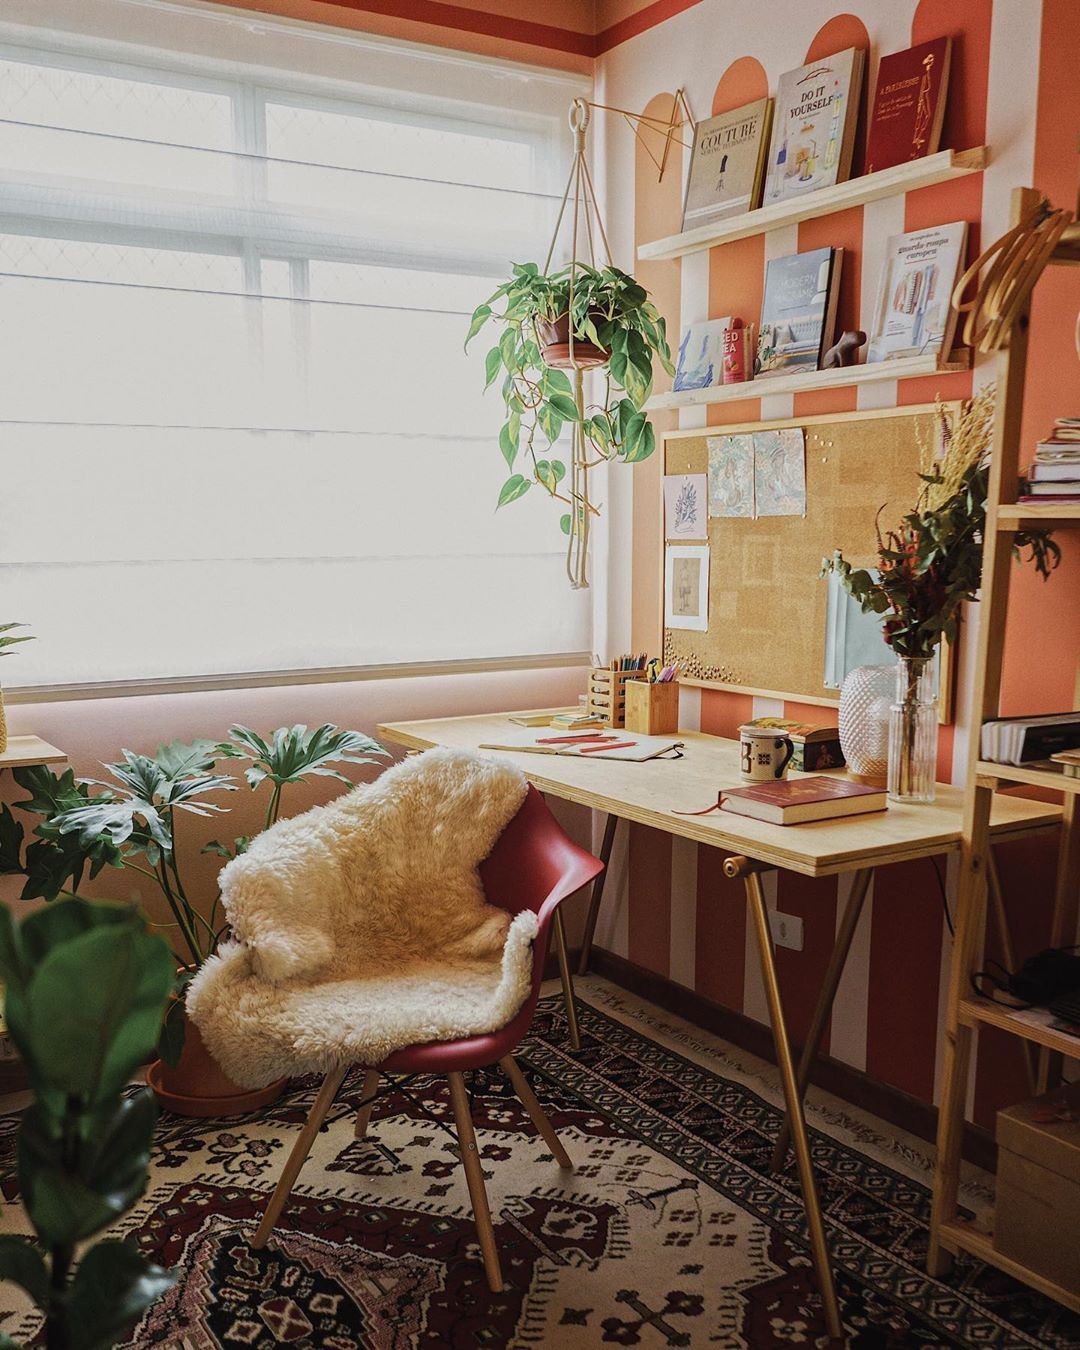 Décor do dia: home office com parede geométrica e plantas (Foto: Instagram/@brugalliano)